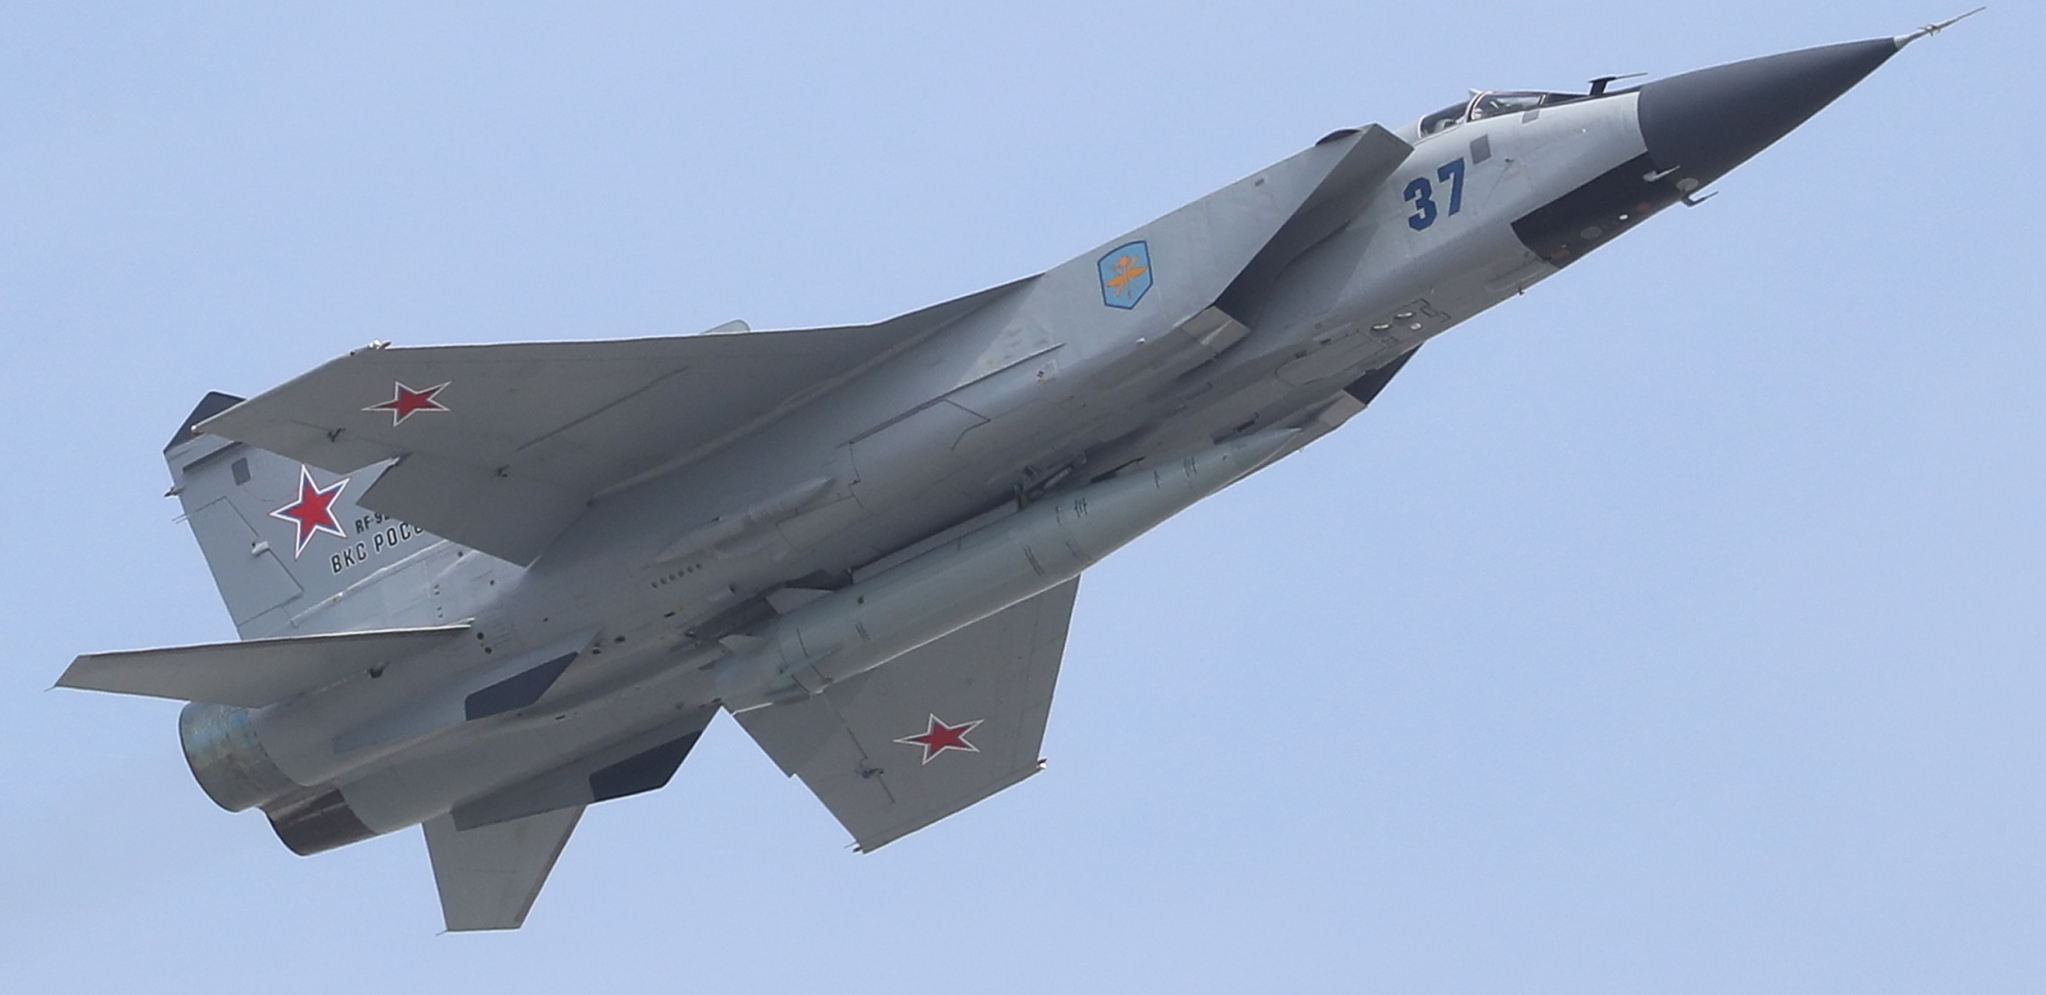 BRITANCI PROVOCIRAJU RAT SA RUSIJOM Špijunski avion je ušao u ruski vazdušni prostor, ali ga je MiG 31 oterao